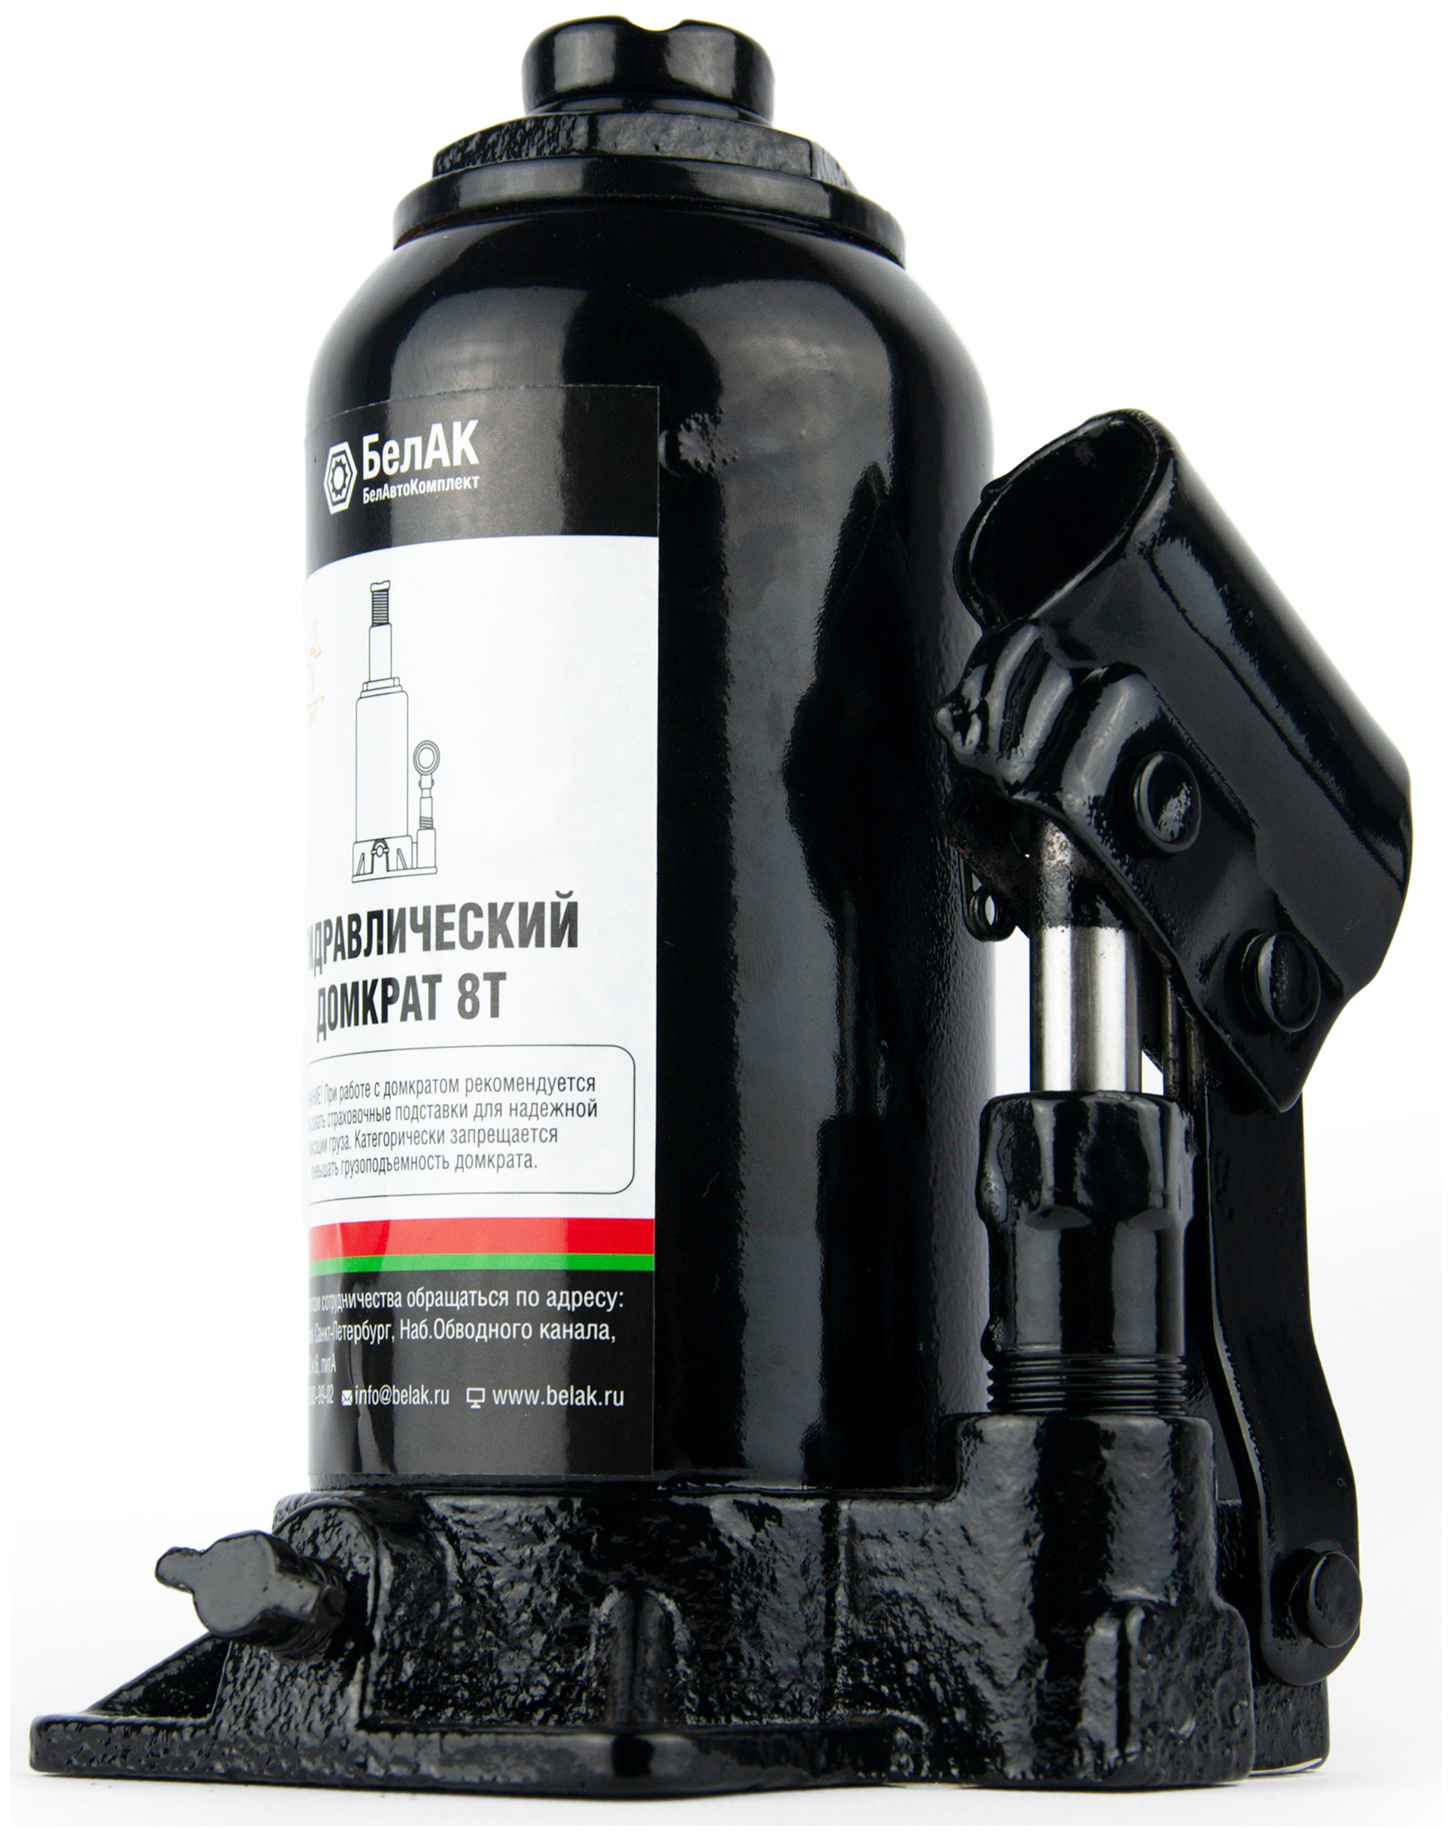 Домкрат бутылочный гидравлический для мототехники БелАК БАК00044 (8 т)